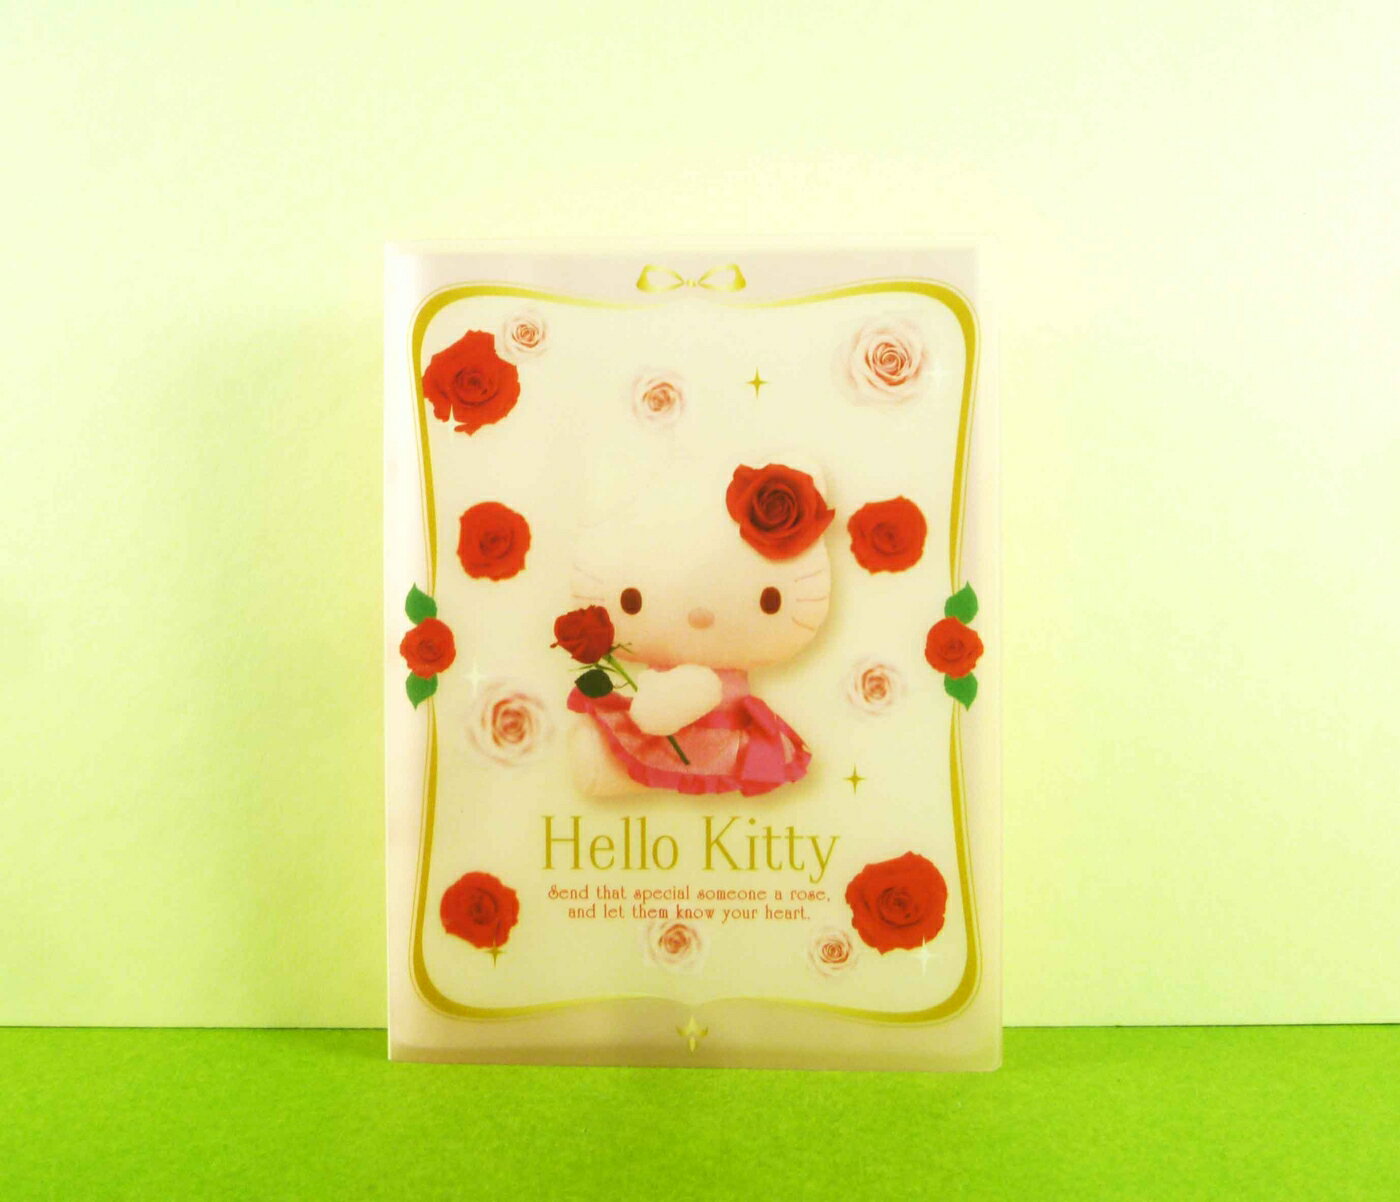 【震撼精品百貨】Hello Kitty 凱蒂貓 3*5相本 玫瑰【共1款】 震撼日式精品百貨